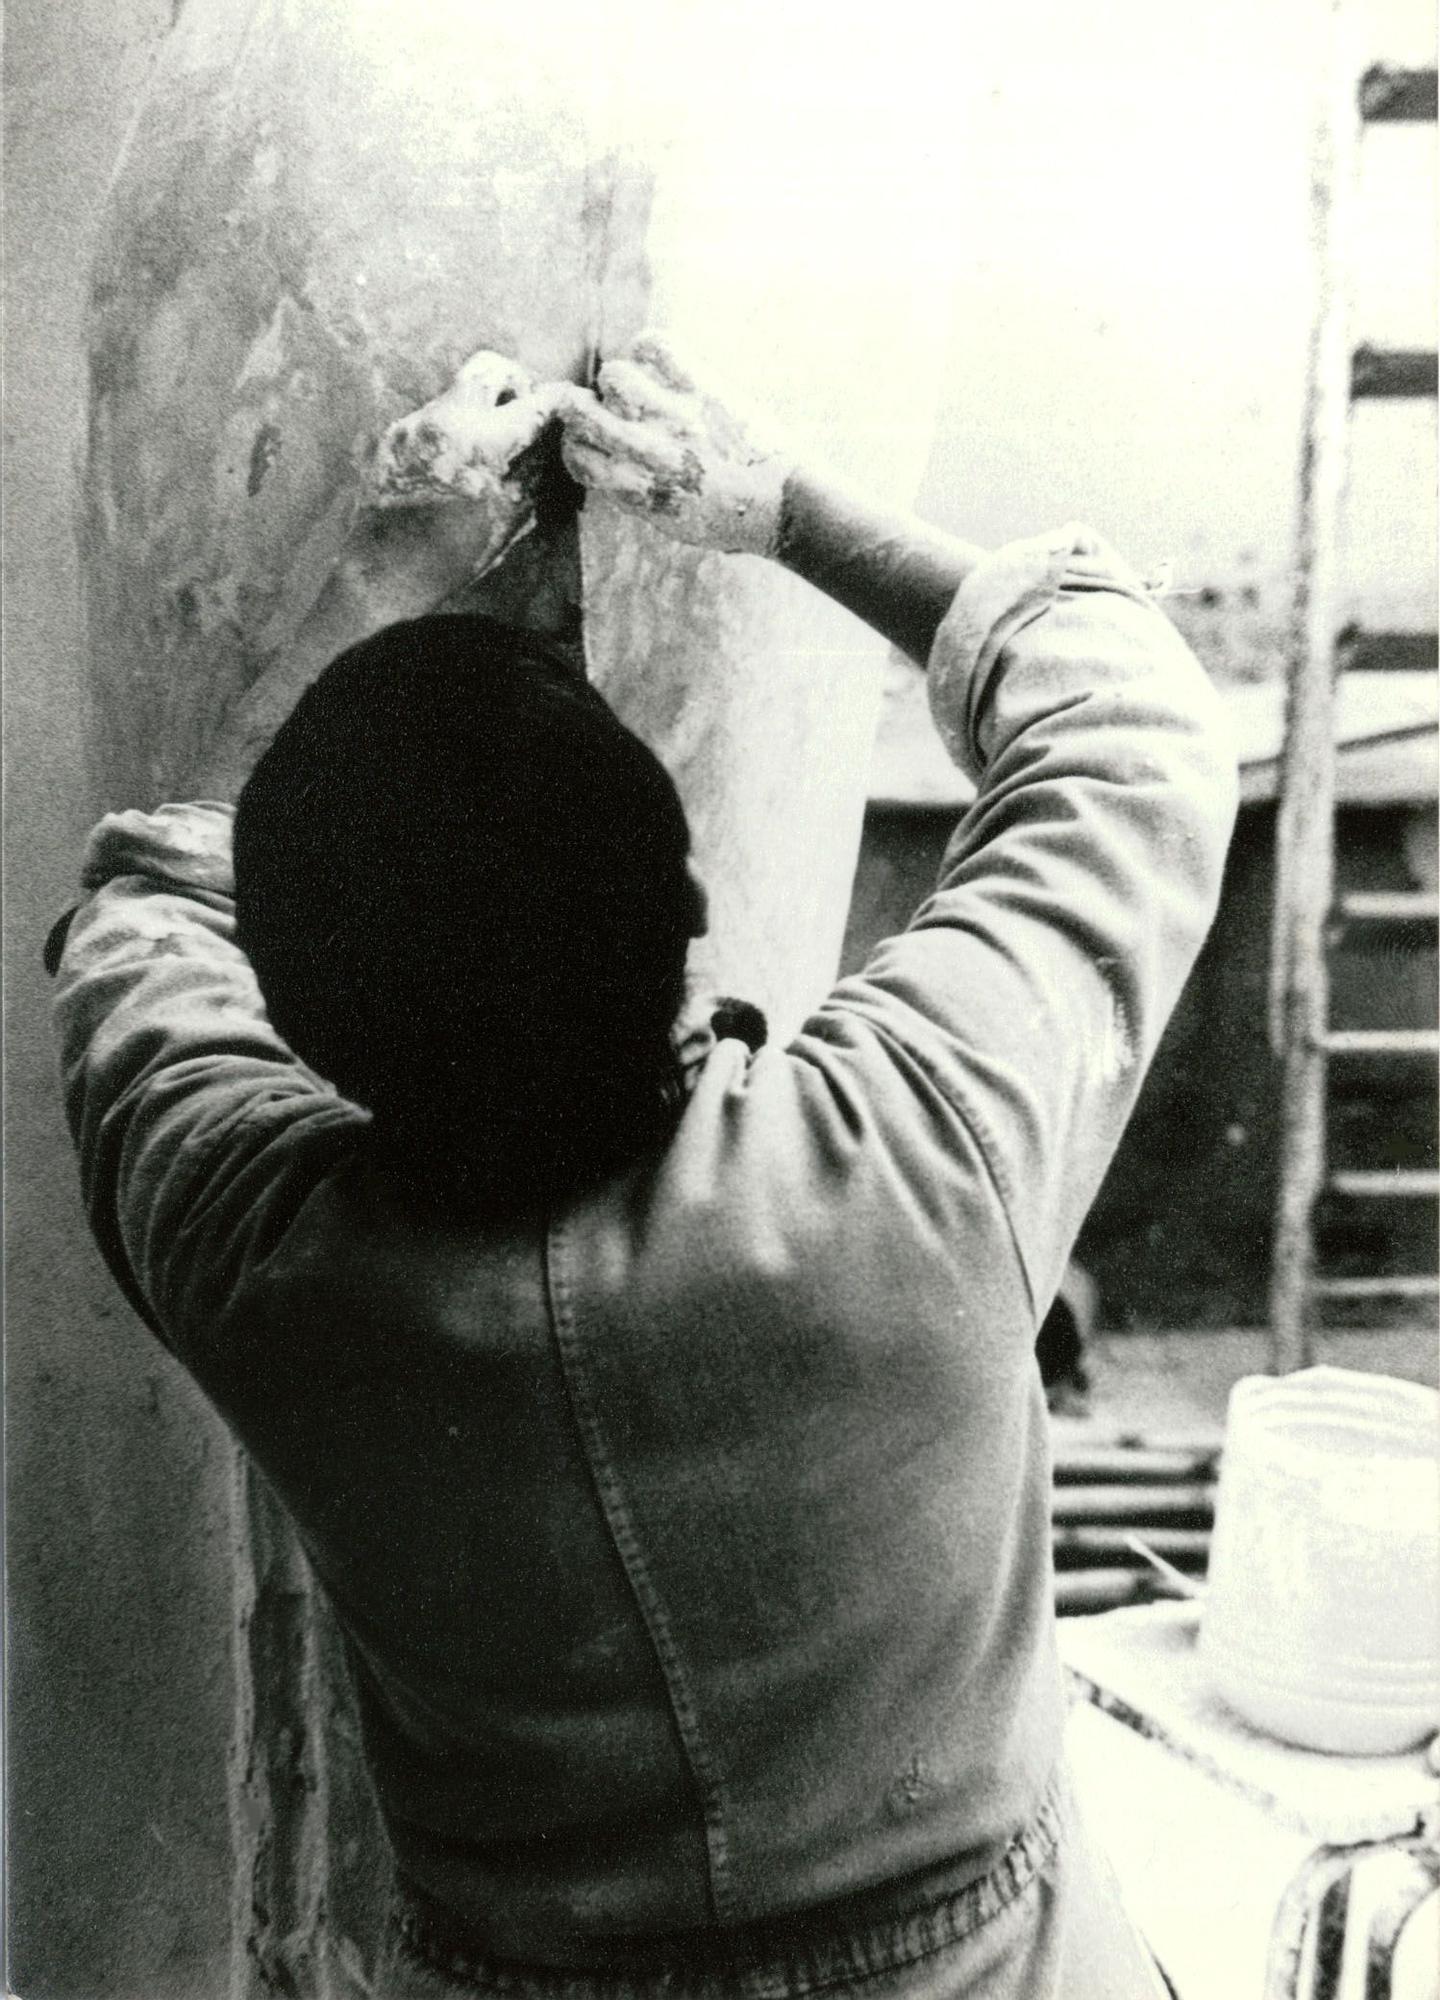 La artista, modelando en su estudio en los años 70